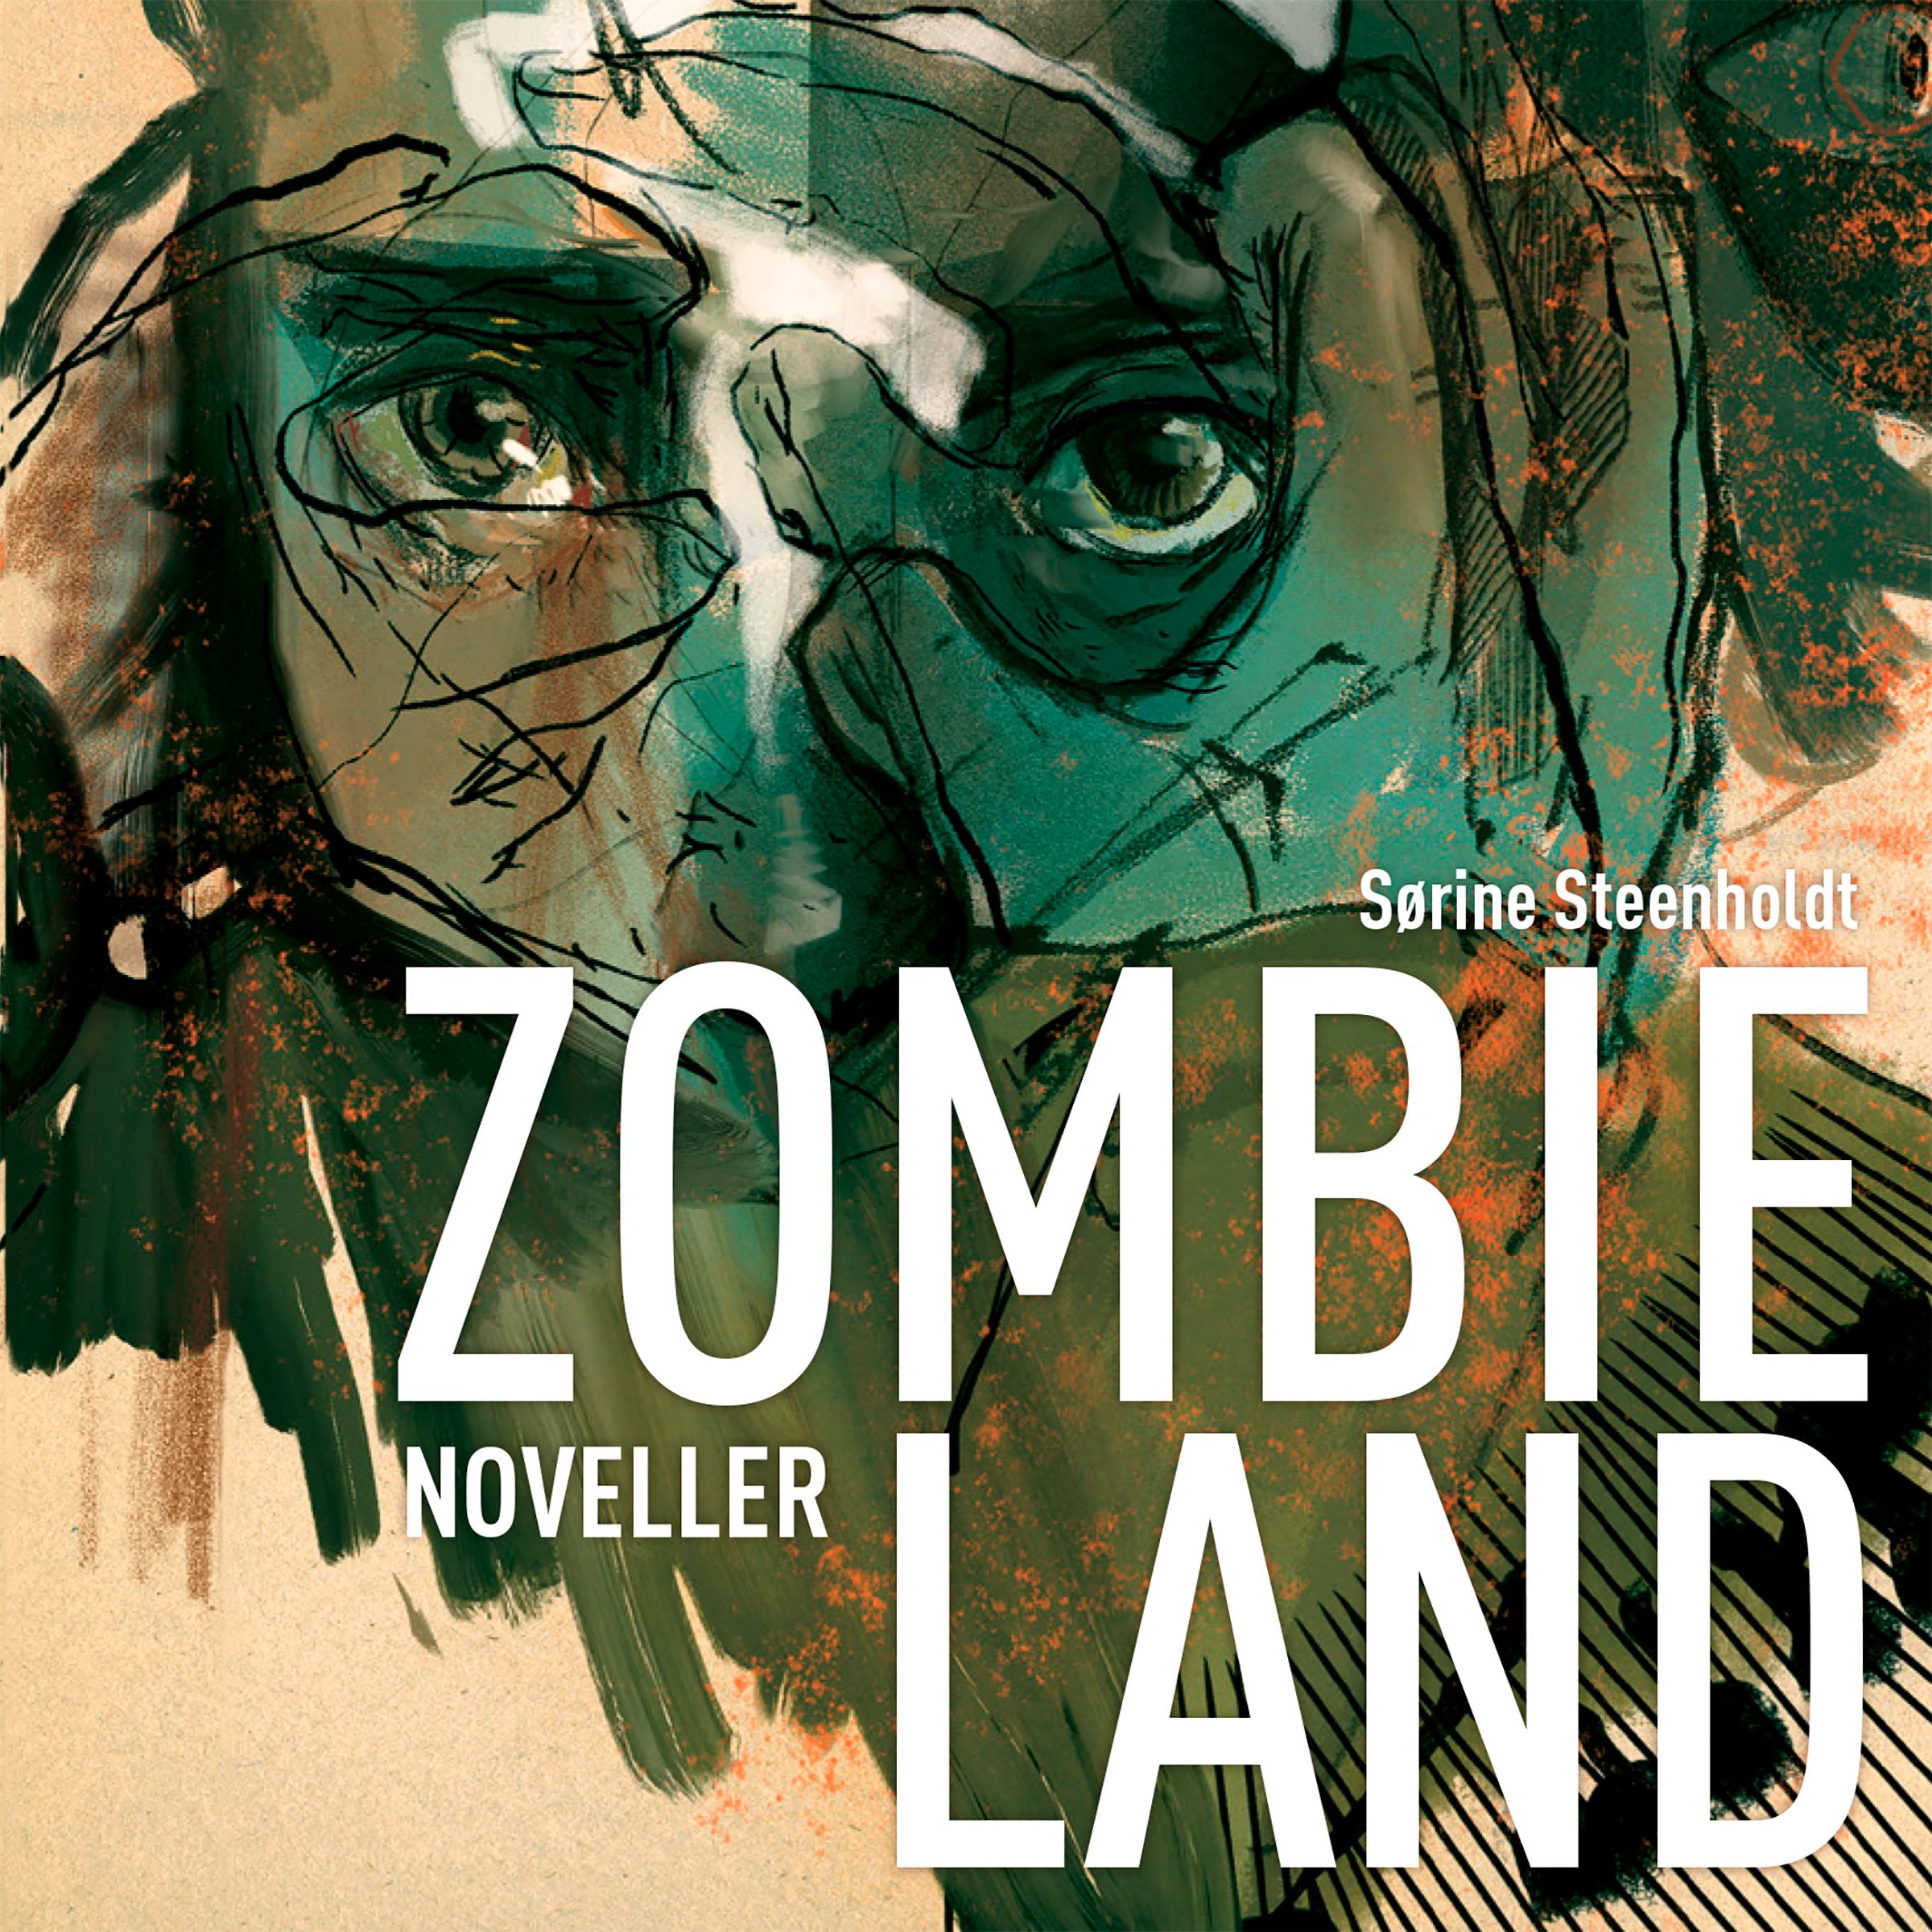 Zombieland, lydbog af Sørine Steenholdt